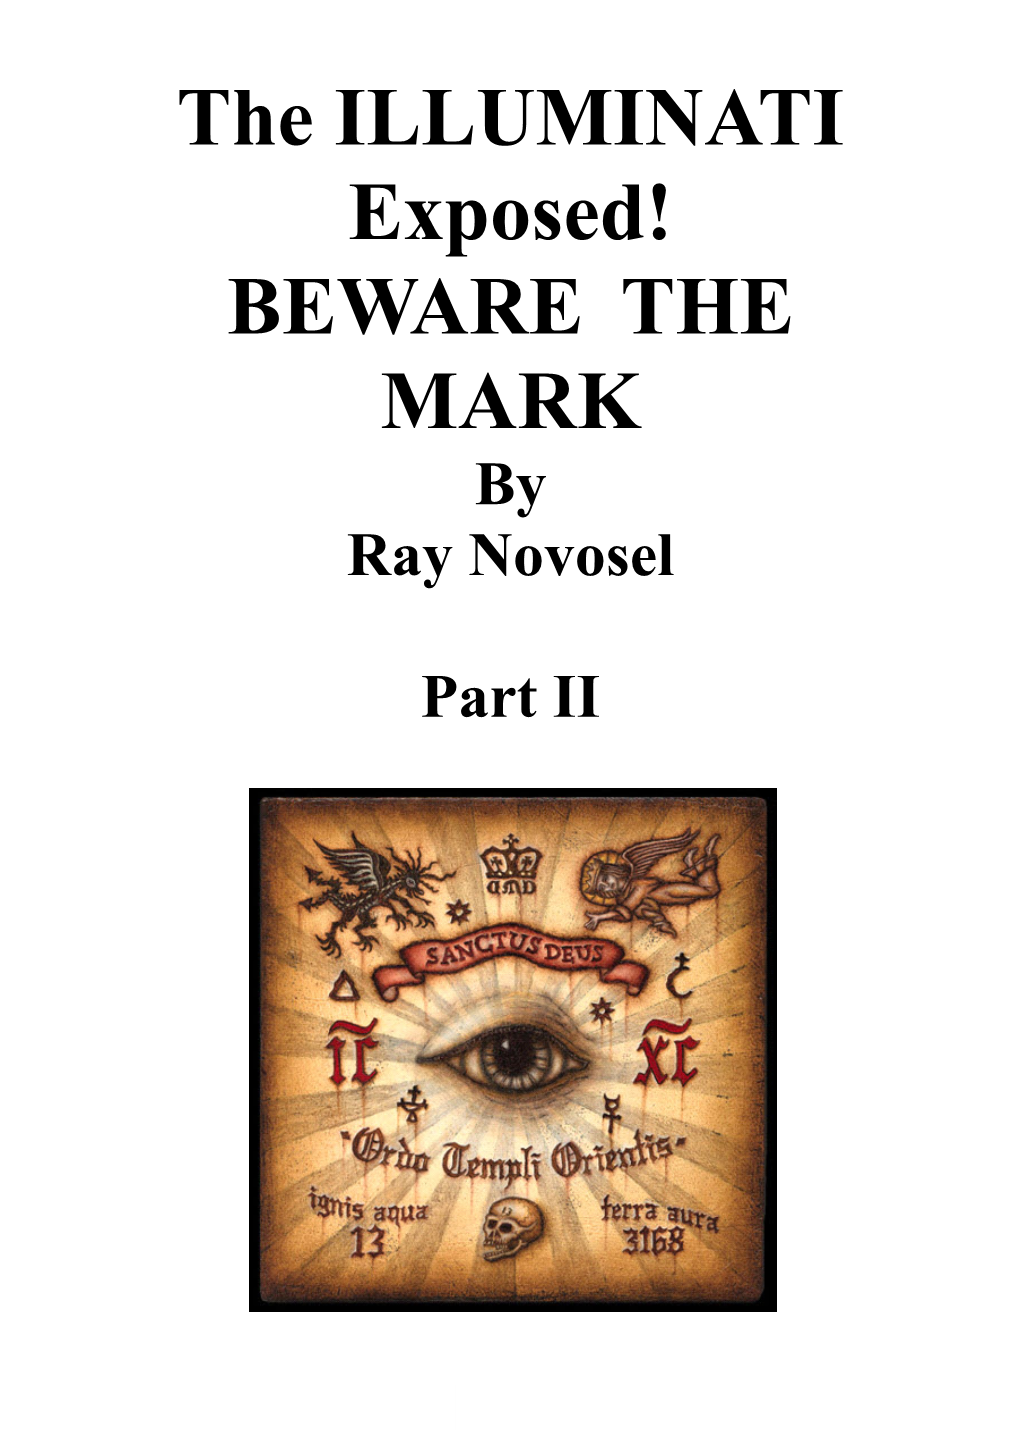 The ILLUMINATI Exposed! BEWARE the MARK by Ray Novosel